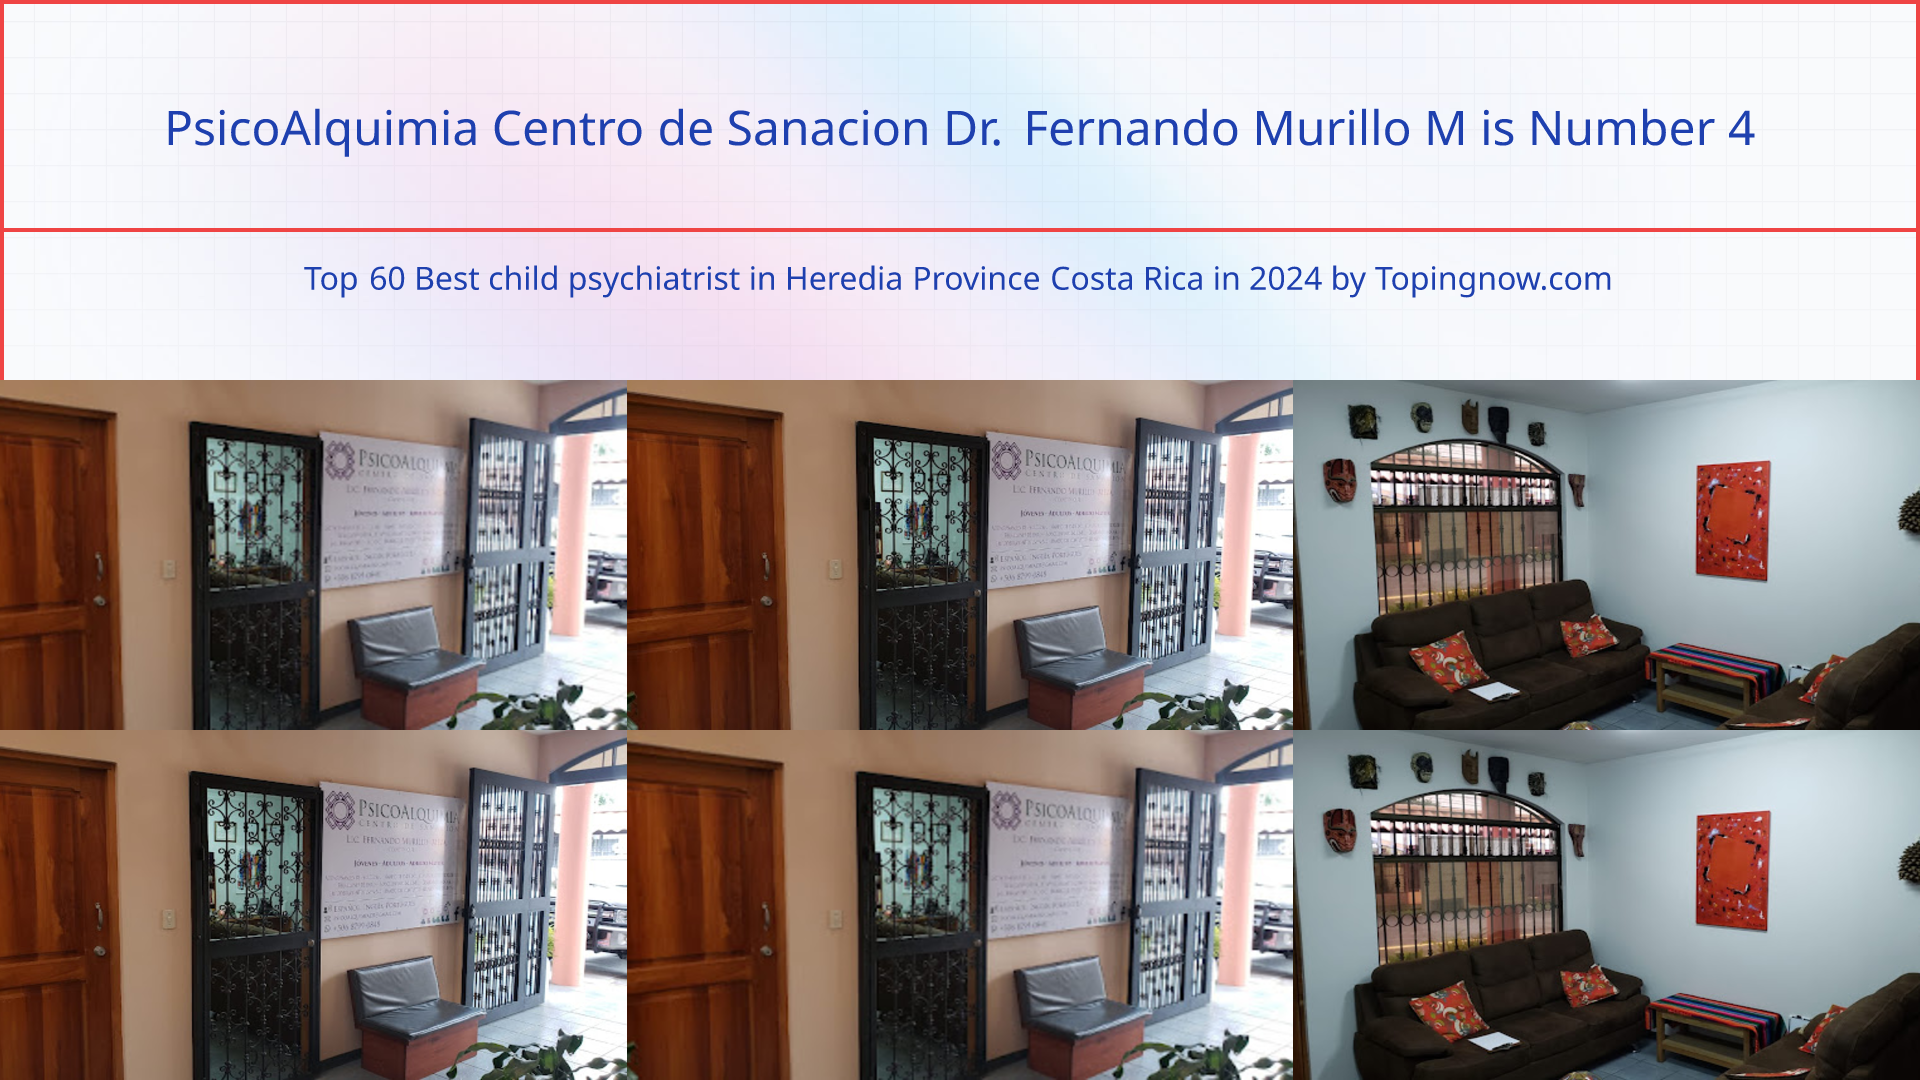 PsicoAlquimia Centro de Sanacion Dr. Fernando Murillo M: Top 60 Best child psychiatrist in Heredia Province Costa Rica in 2024